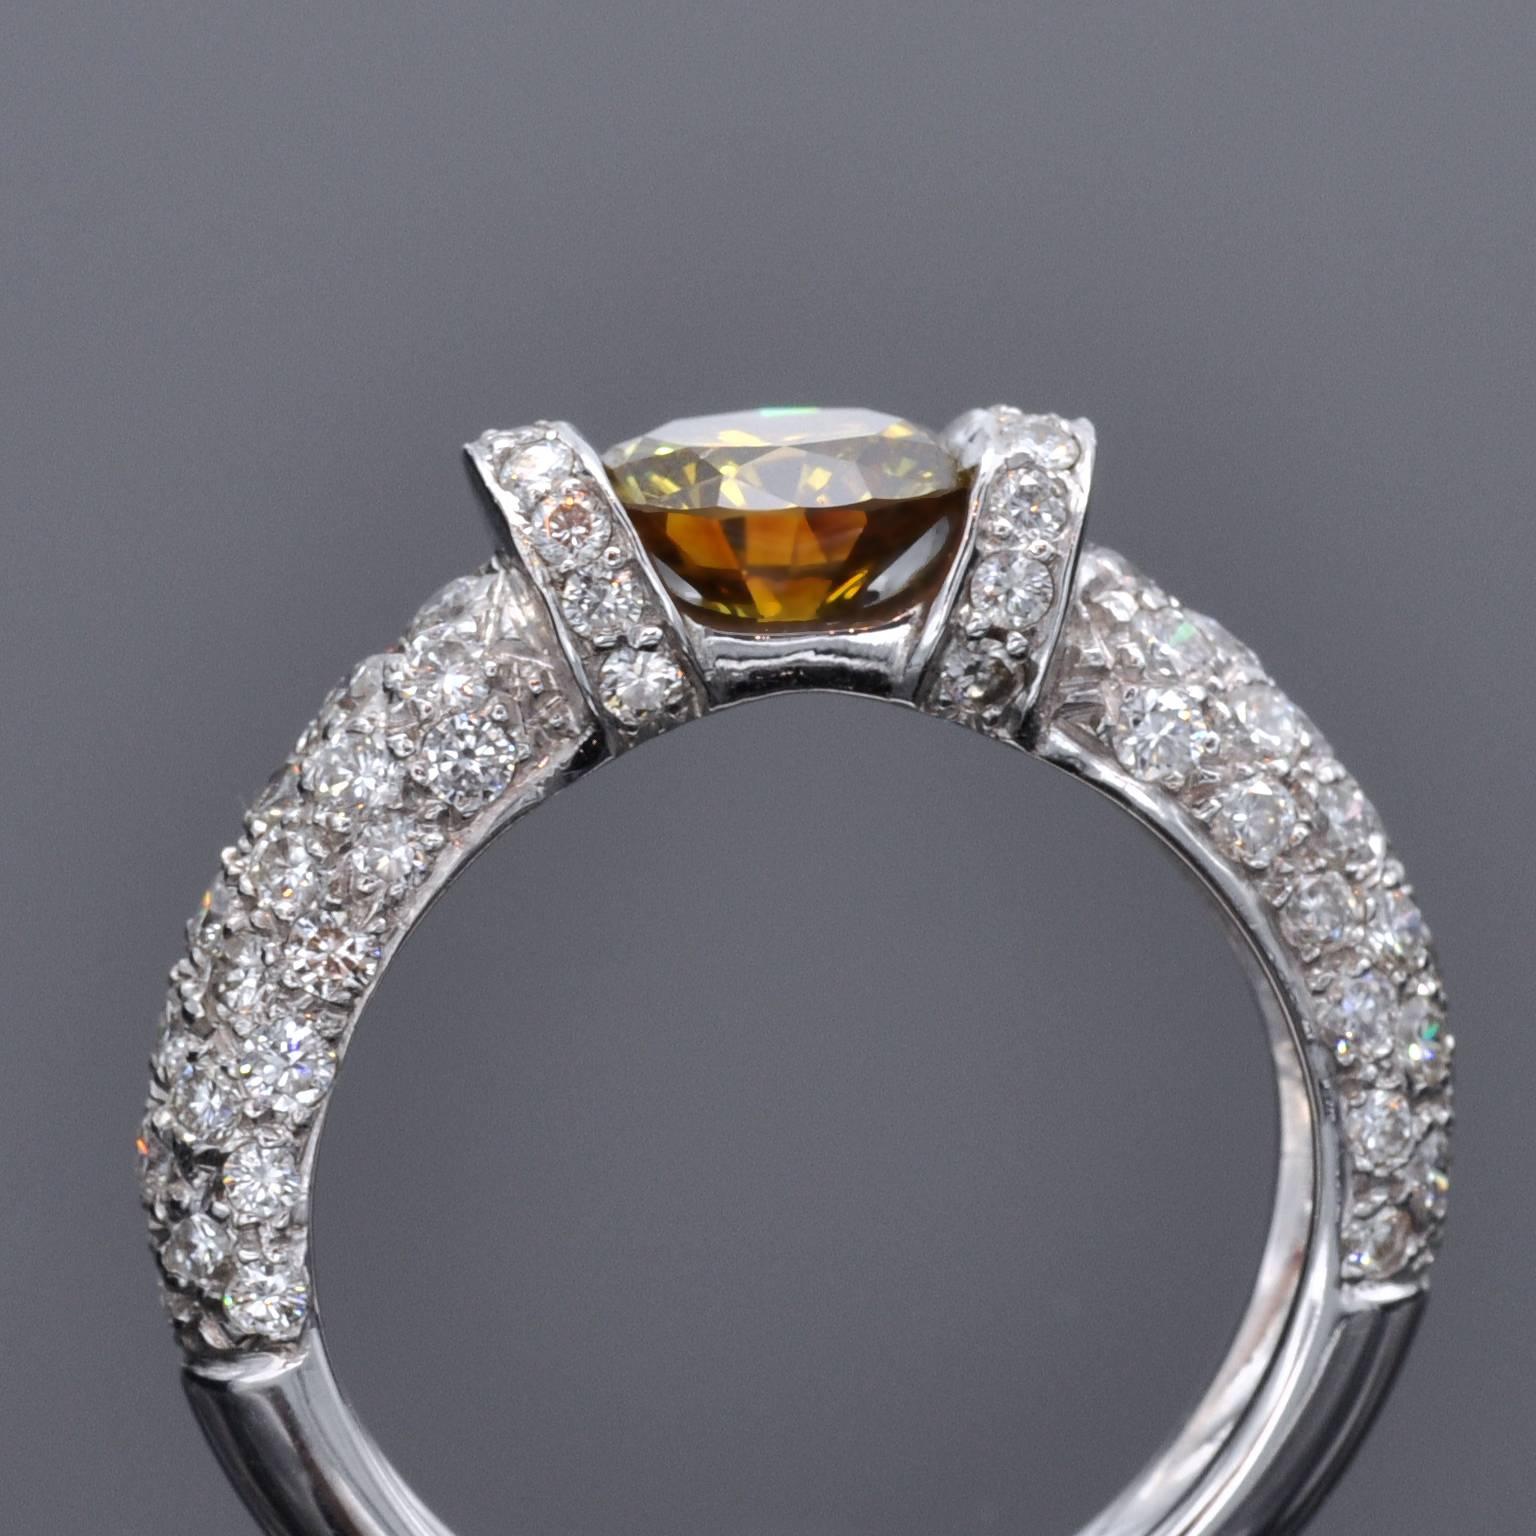 Erstaunlicher Verlobungsring mit Solitär. Der zentrale Diamant, ein 1,25 Karat intensiver orange-gelber runder Brillant, wird nur an den Seiten gehalten und enthüllt seine Schönheit von allen Seiten. Es wird mit einem HRD-Zertifikat (dem führenden